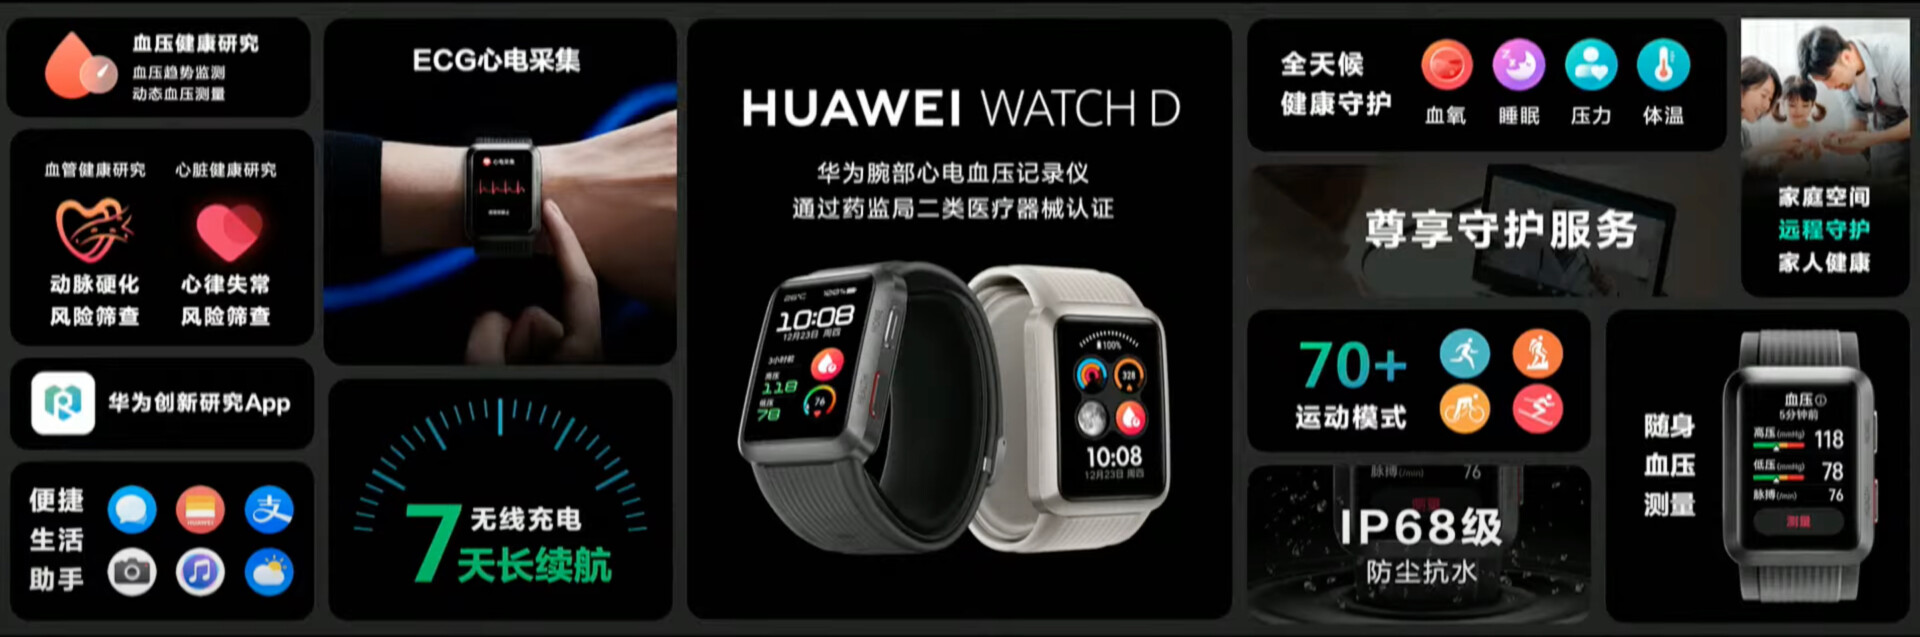 Spécifications de la montre Huawei D